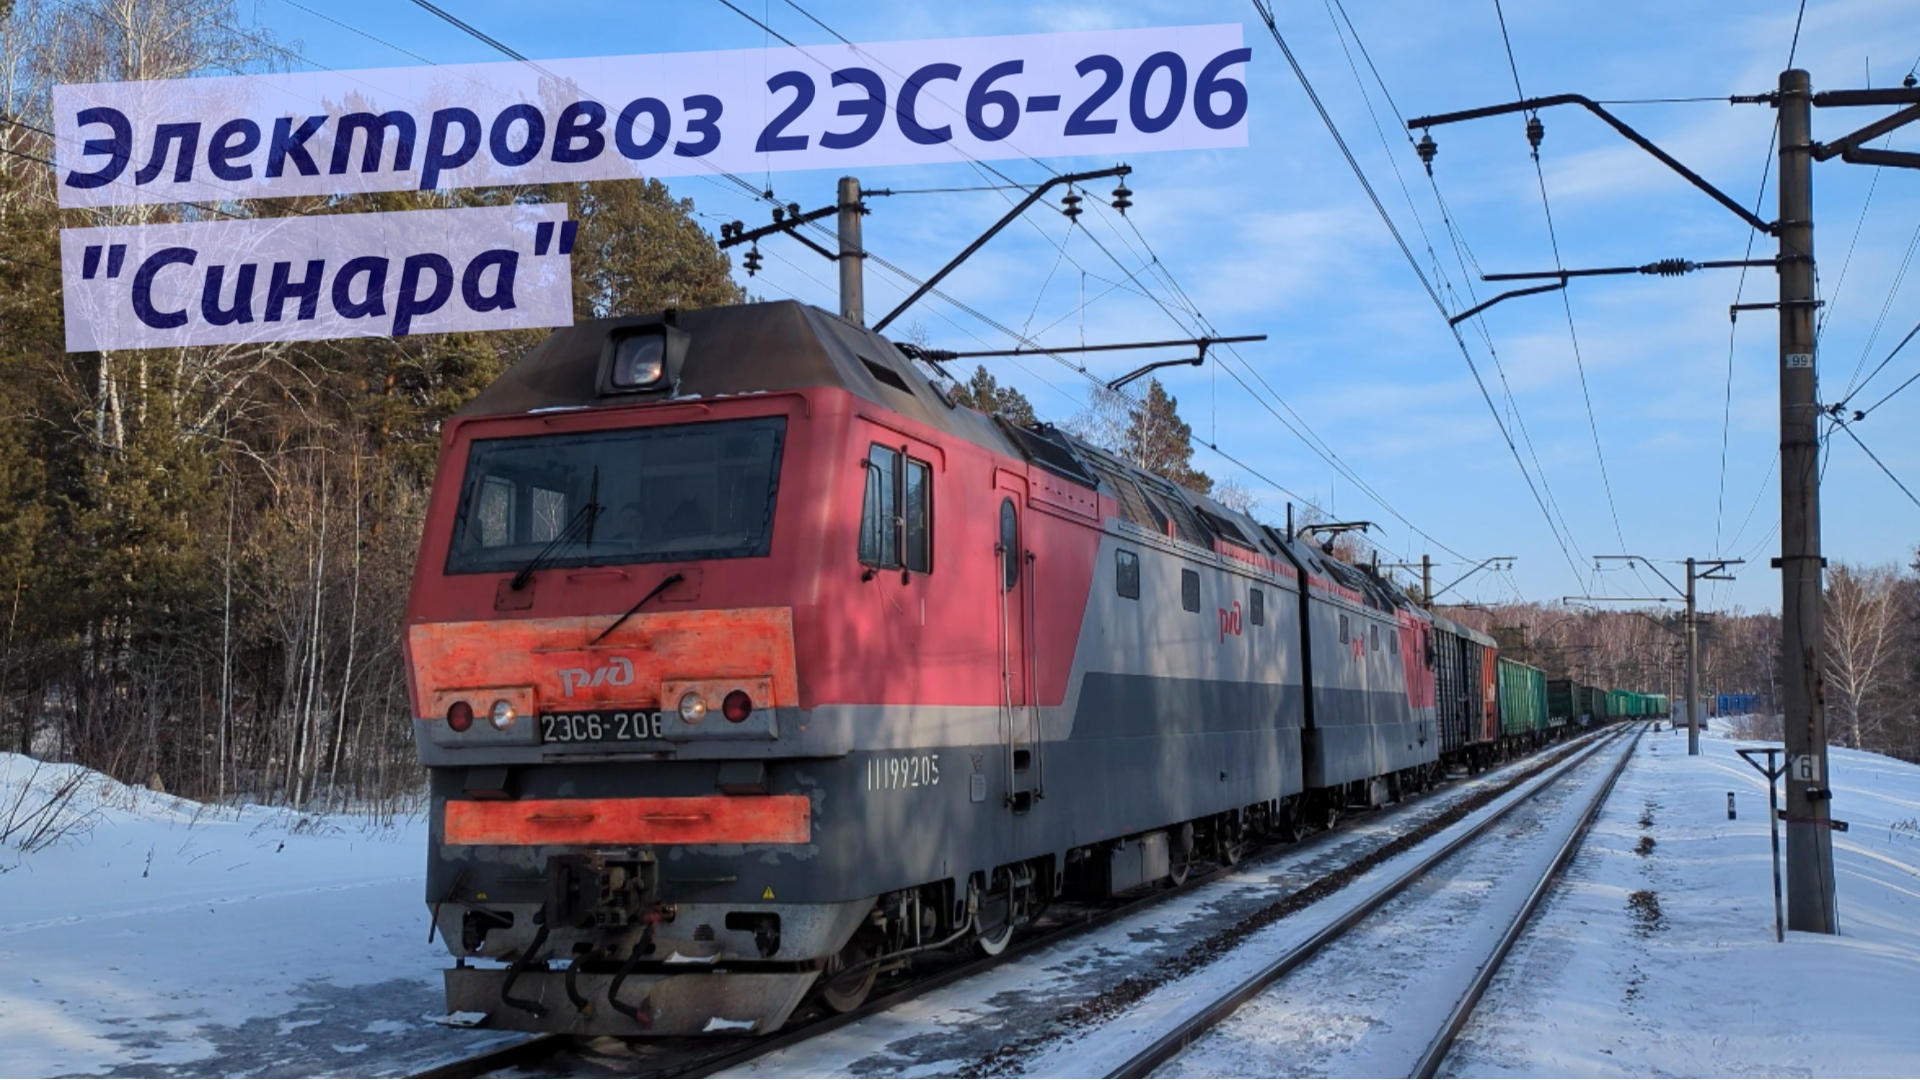 Электровоз 2ЭС6-206 "Синара" с грузовым поездом на Обском море